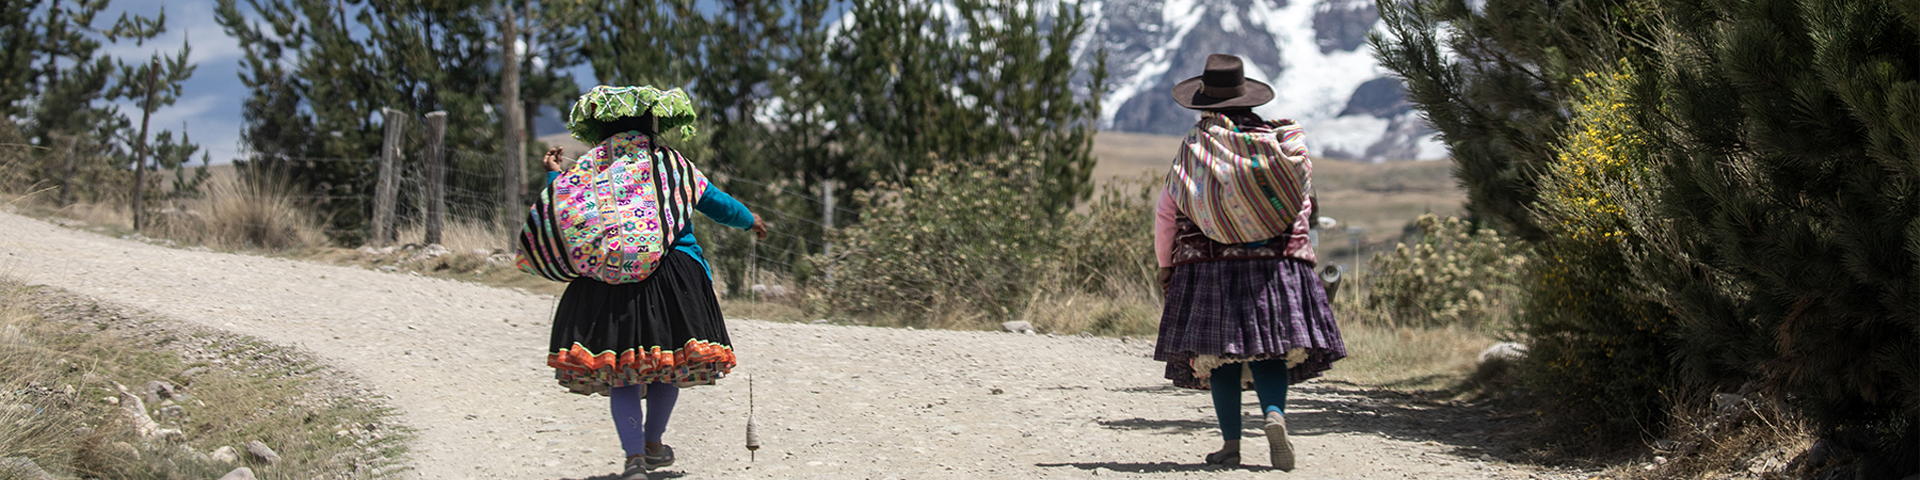 Frauen spinnen Alpakafasern auf dem Heimweg.